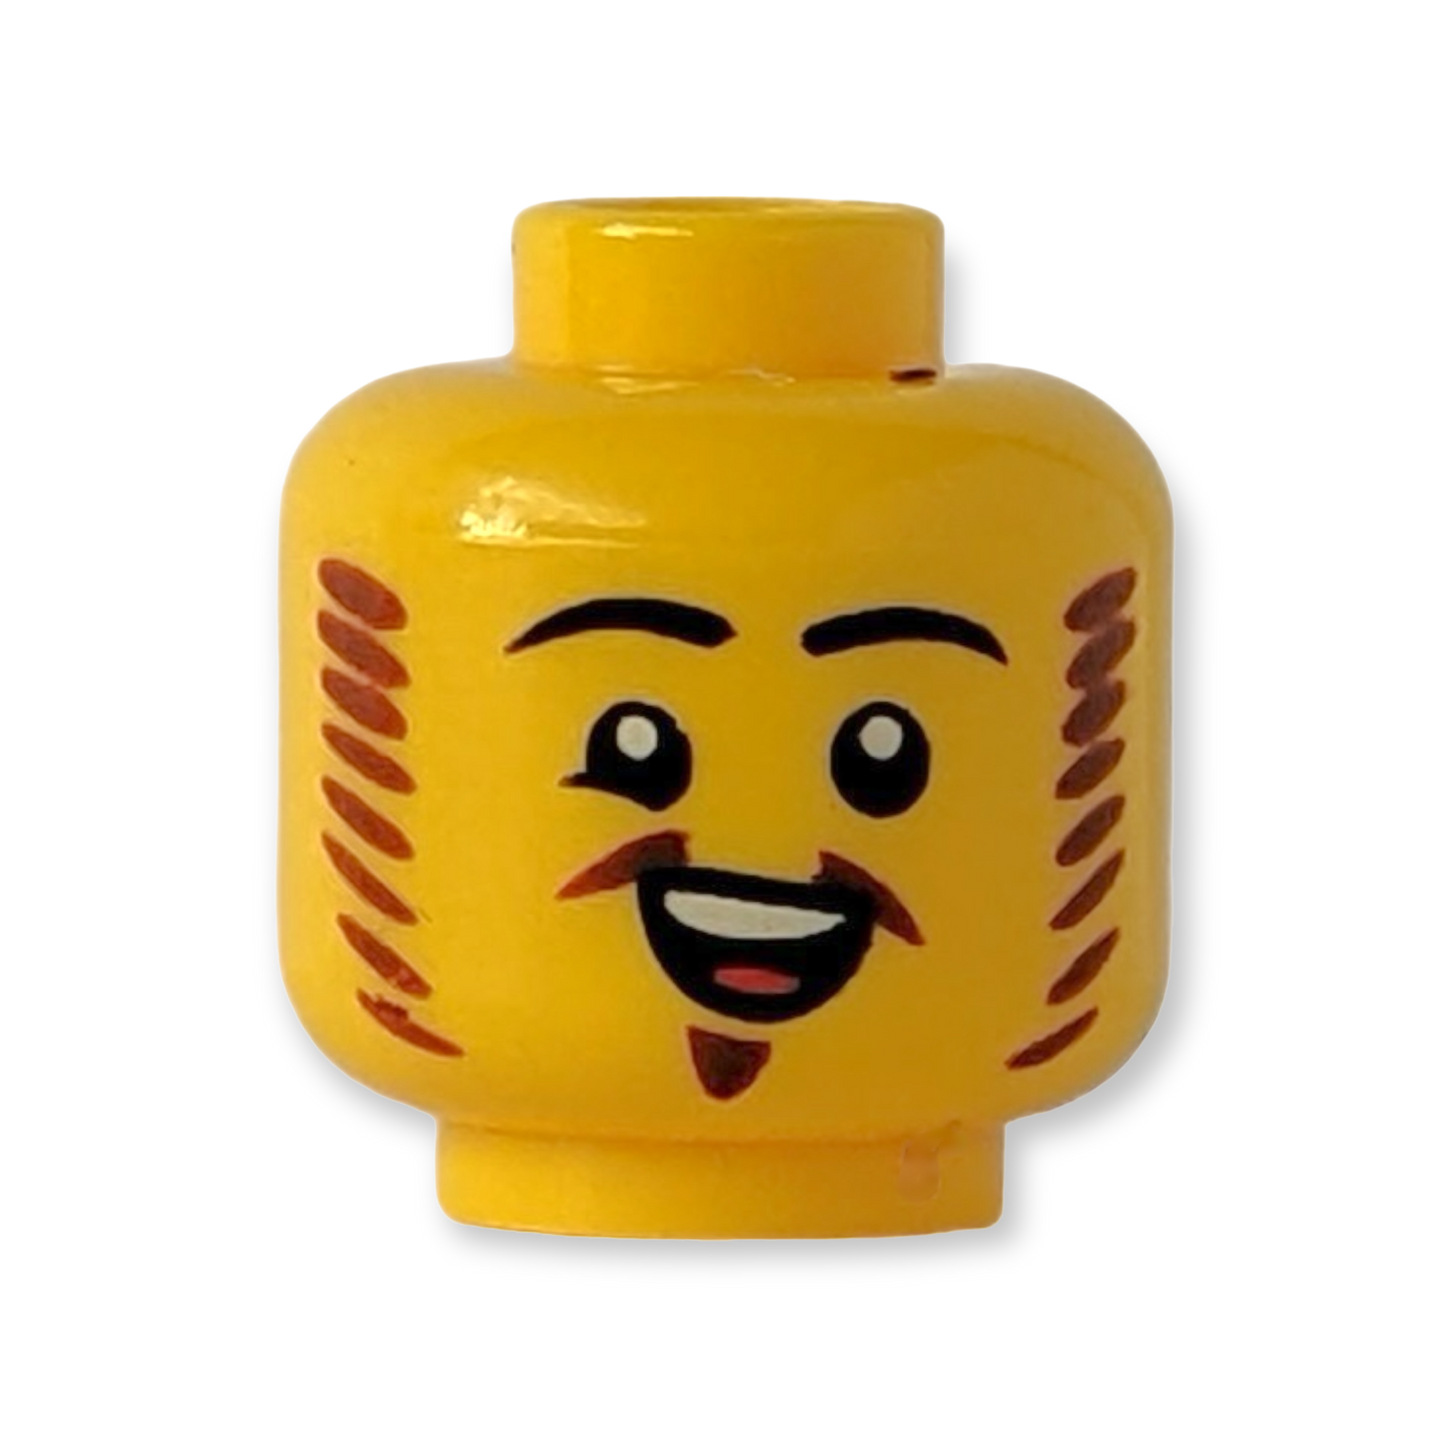 LEGO Head - 3587 Schwarze Augenbrauen rötlich-braune Koteletten und Van-Dyke-Bart